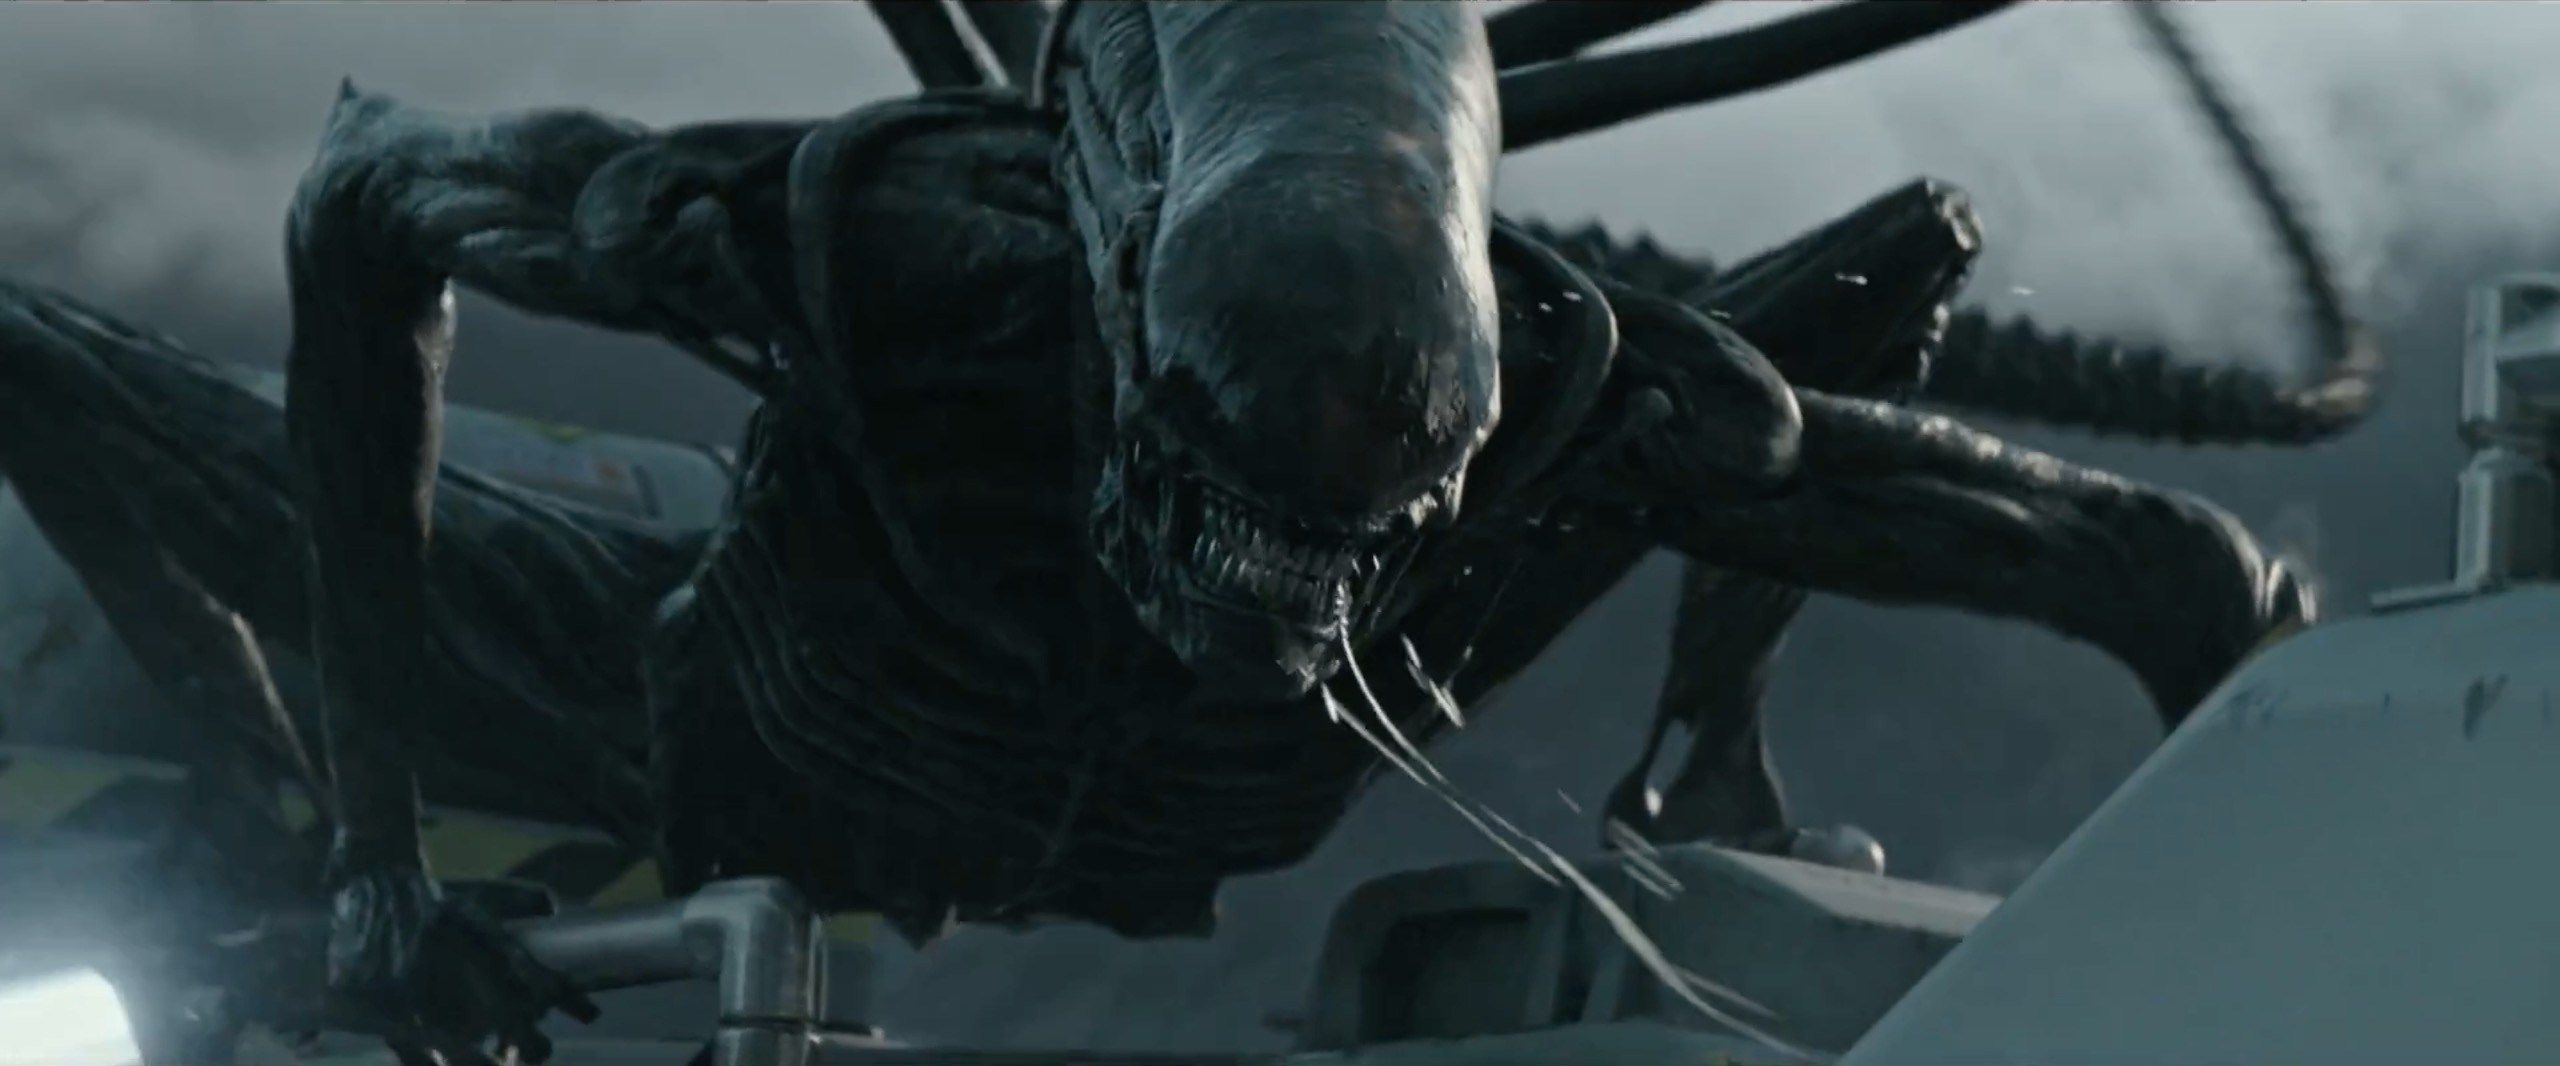 'Alien: Covenant' გთავაზობთ იაფი მღელვარებებს, დანარჩენი კი ცარიელი ადგილია